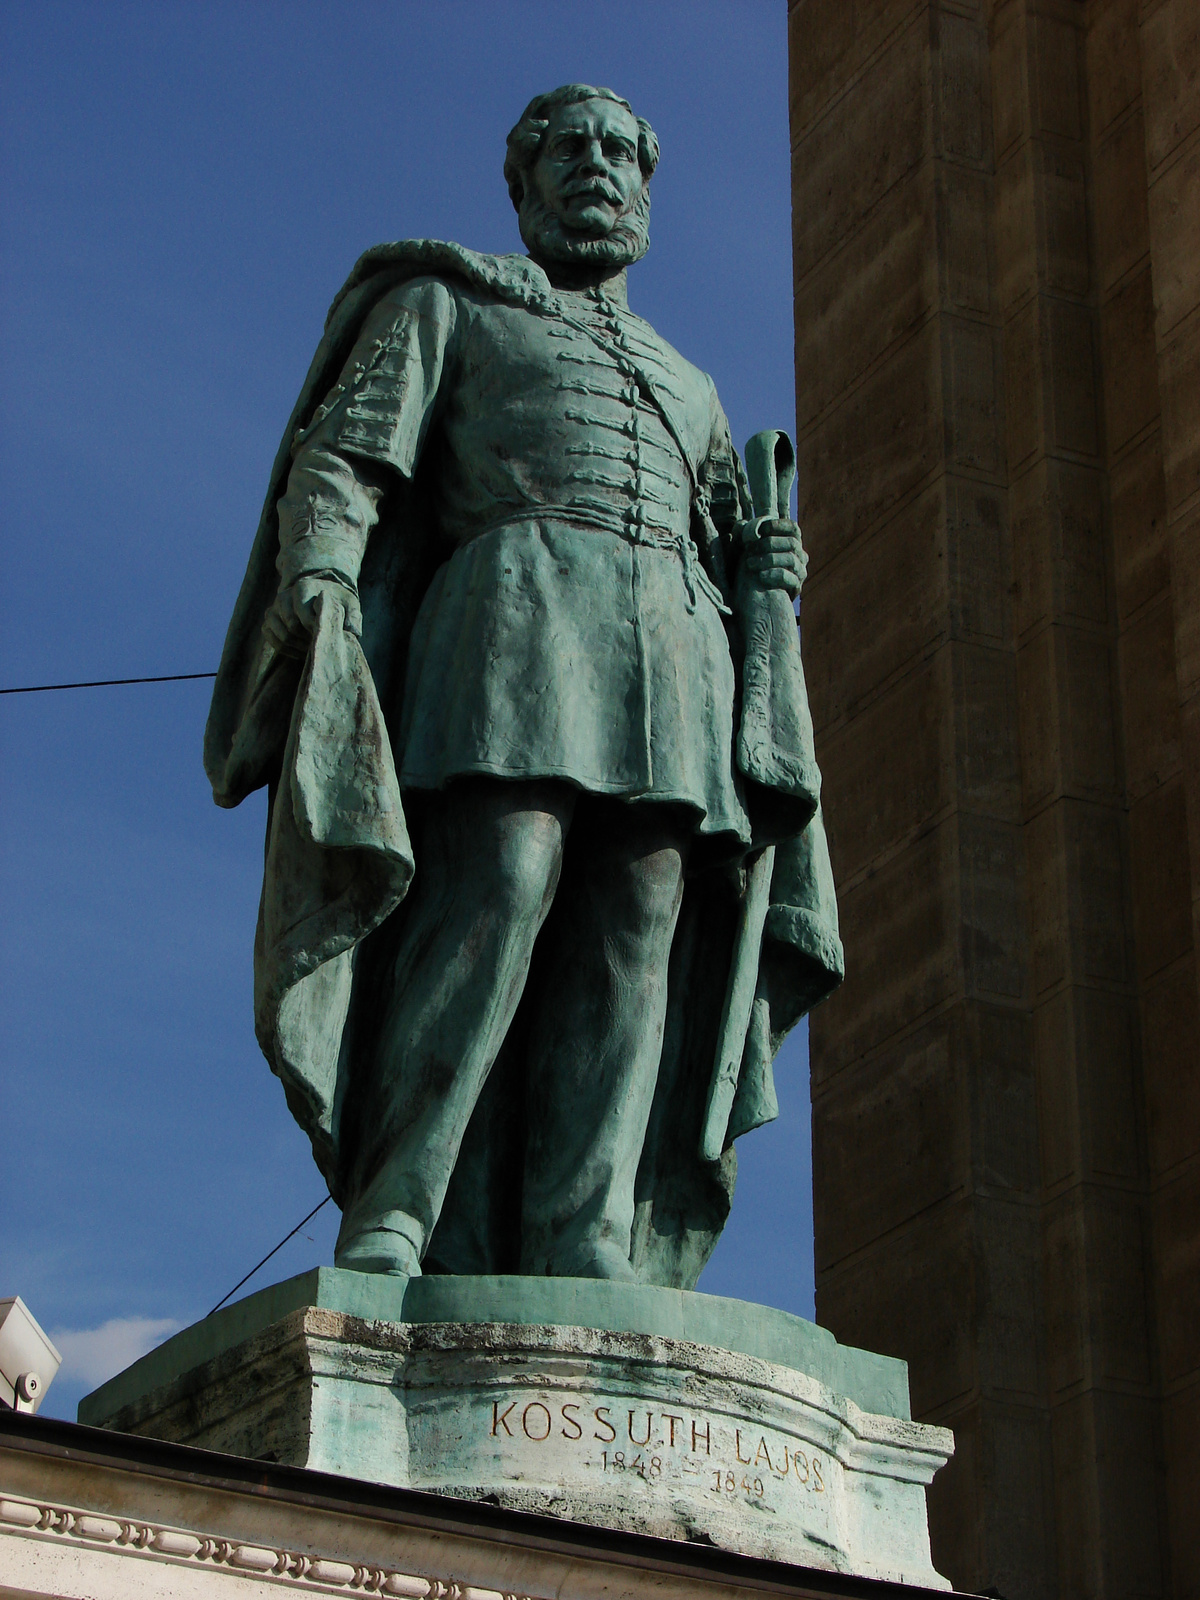 Kossuth Lajos